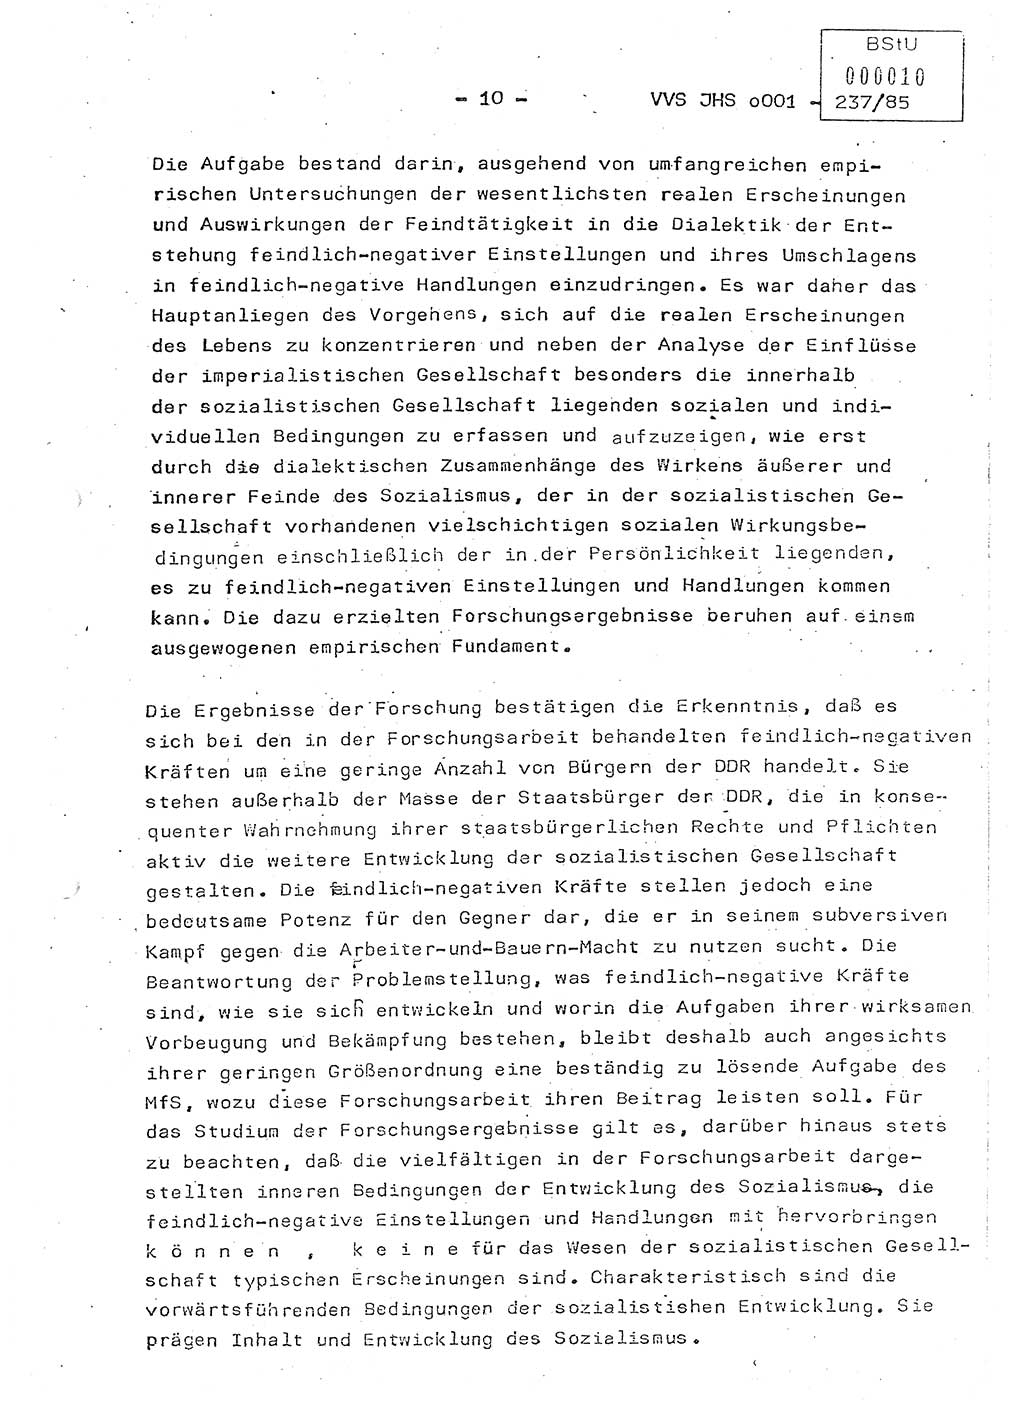 Dissertation Oberstleutnant Peter Jakulski (JHS), Oberstleutnat Christian Rudolph (HA Ⅸ), Major Horst Böttger (ZMD), Major Wolfgang Grüneberg (JHS), Major Albert Meutsch (JHS), Ministerium für Staatssicherheit (MfS) [Deutsche Demokratische Republik (DDR)], Juristische Hochschule (JHS), Vertrauliche Verschlußsache (VVS) o001-237/85, Potsdam 1985, Seite 10 (Diss. MfS DDR JHS VVS o001-237/85 1985, S. 10)